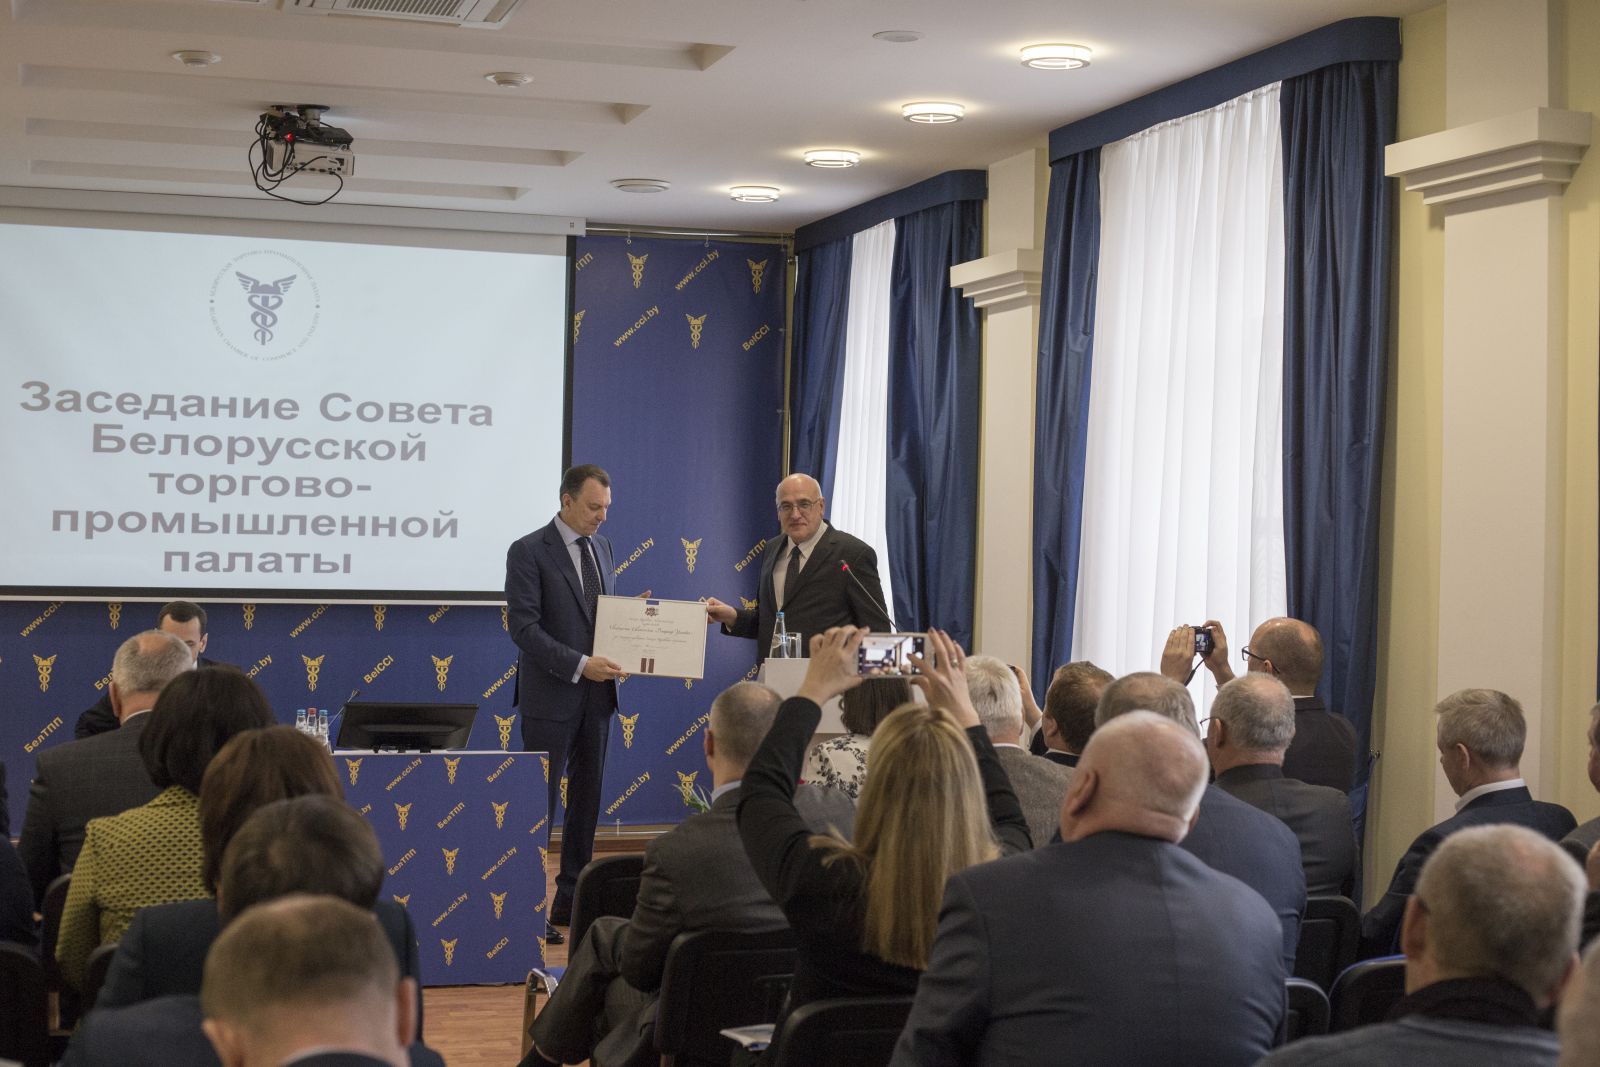 Председатель БелТПП Владимир Улахович награжден почетной грамотой Министерства иностранных дел Латвийской Республики